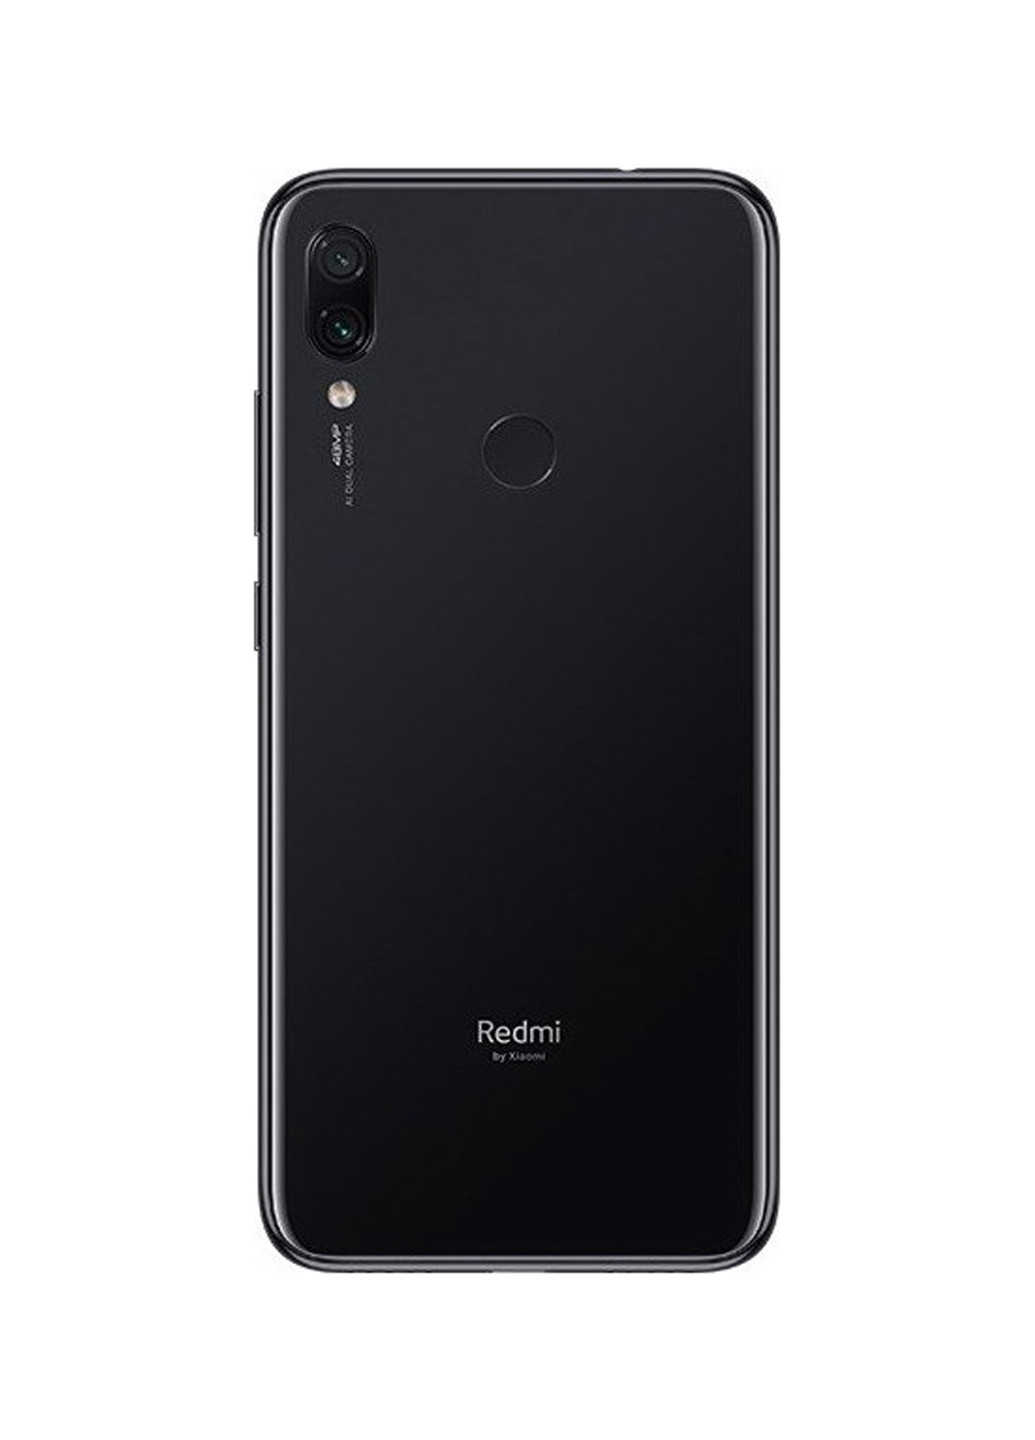 Смартфон Redmi Note 7 3 / 32GB Space Black Xiaomi redmi note 7 3/32gb space black (130569694)